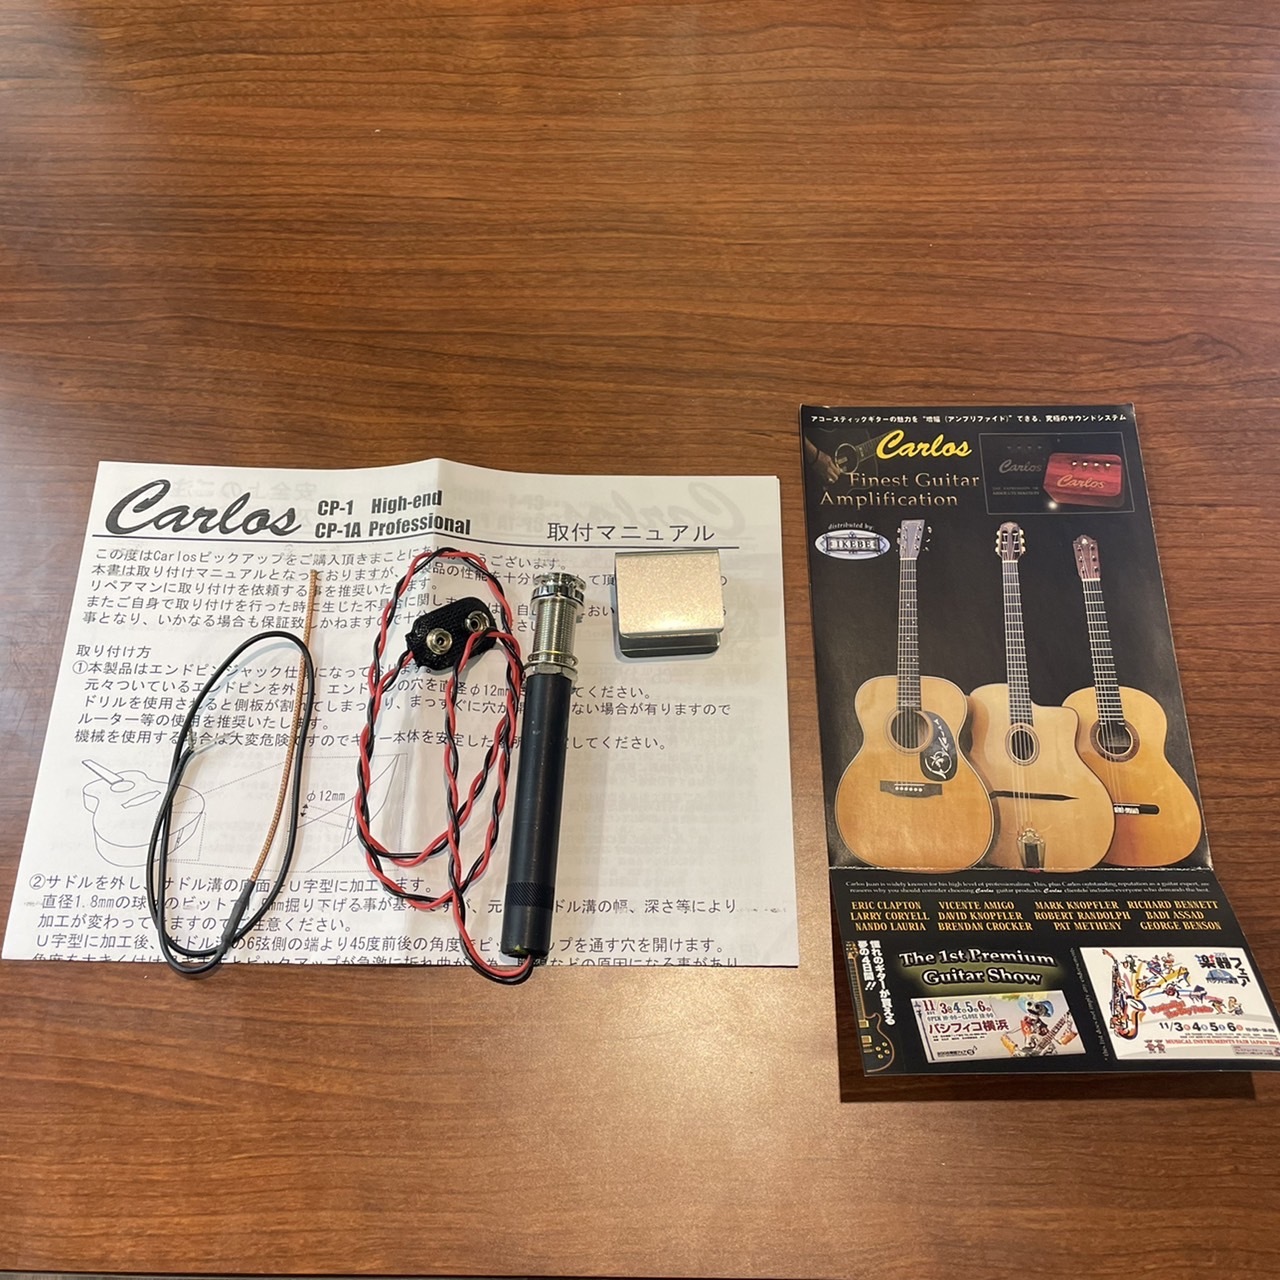 Carlos CP-1A Professional（新品特価）【楽器検索デジマート】